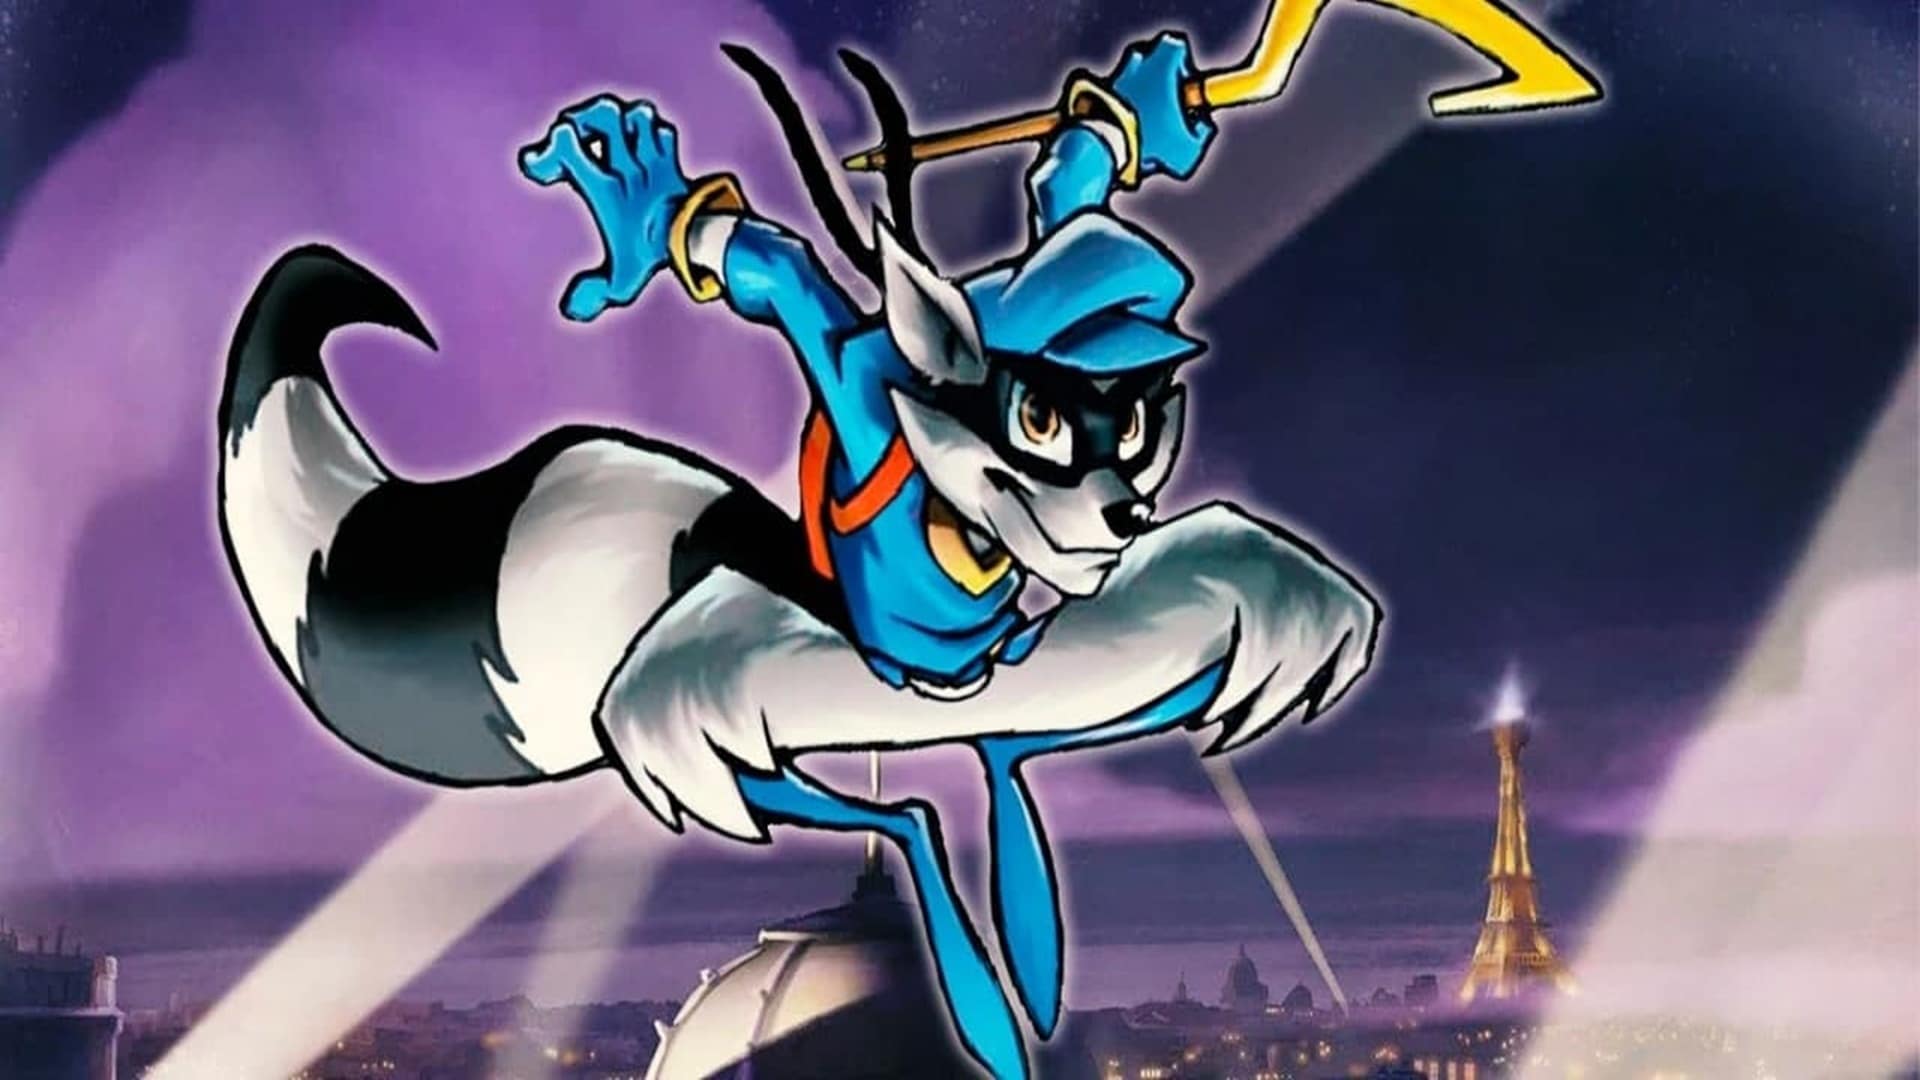 Los nuevos juegos de Sly Cooper y Infamous podrían revelarse este año, GamersRD